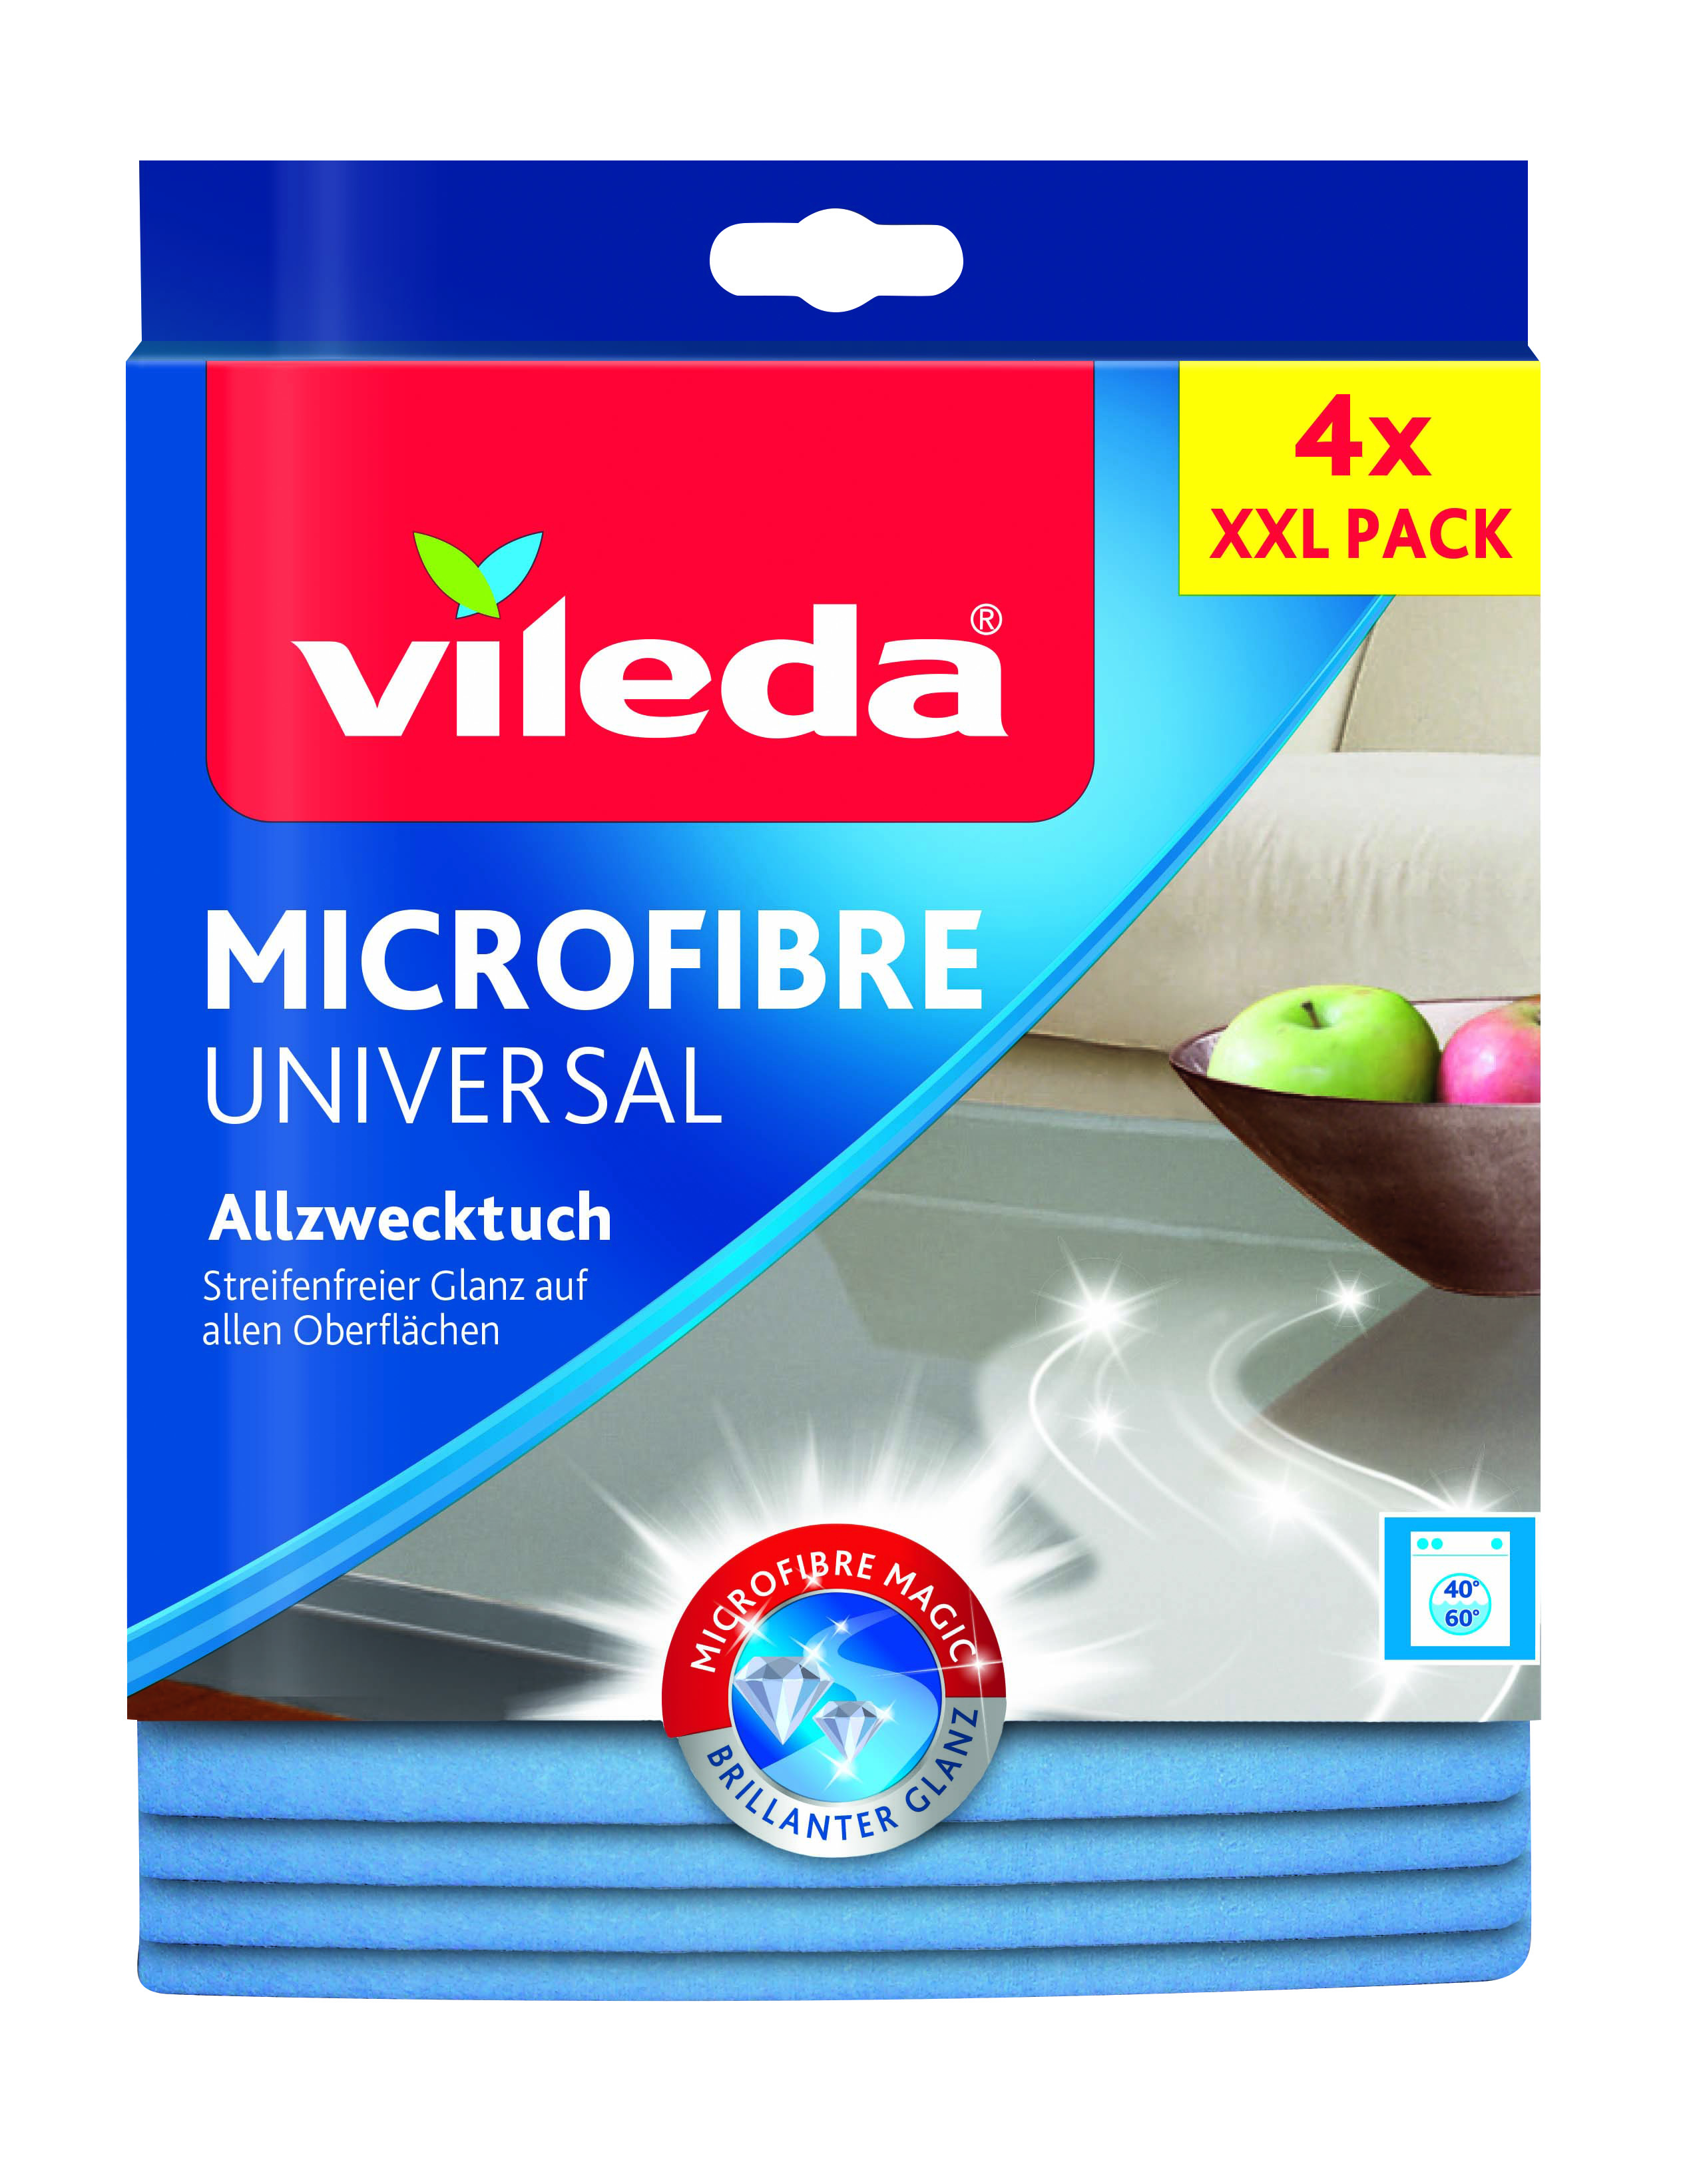 Vileda Microfibre Universal Allzwecktuch, XXL Pack